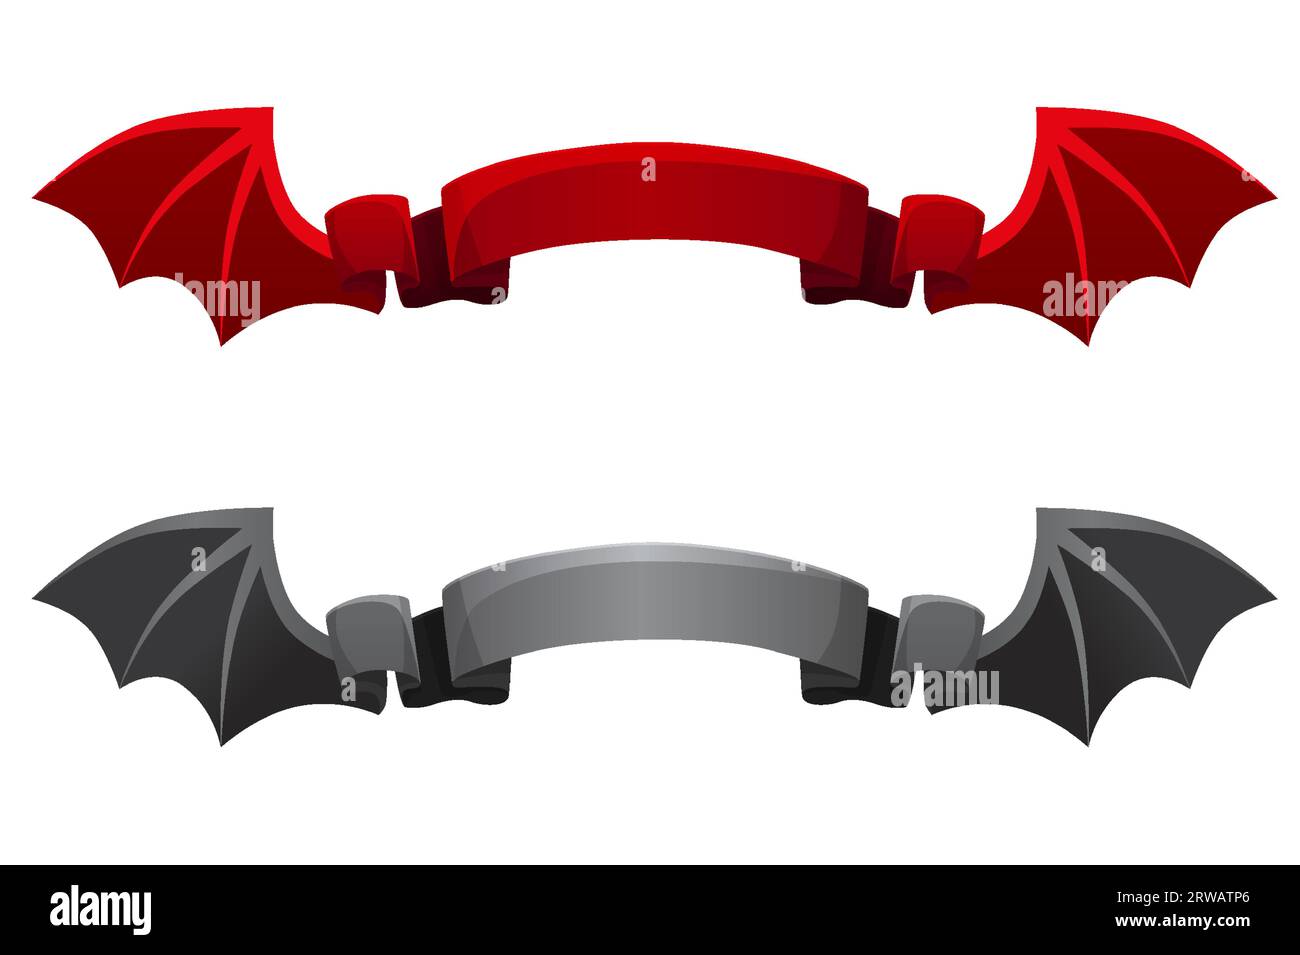 Ruban rouge et noir avec des ailes de diable pour le décor d'Halloween Illustration de Vecteur